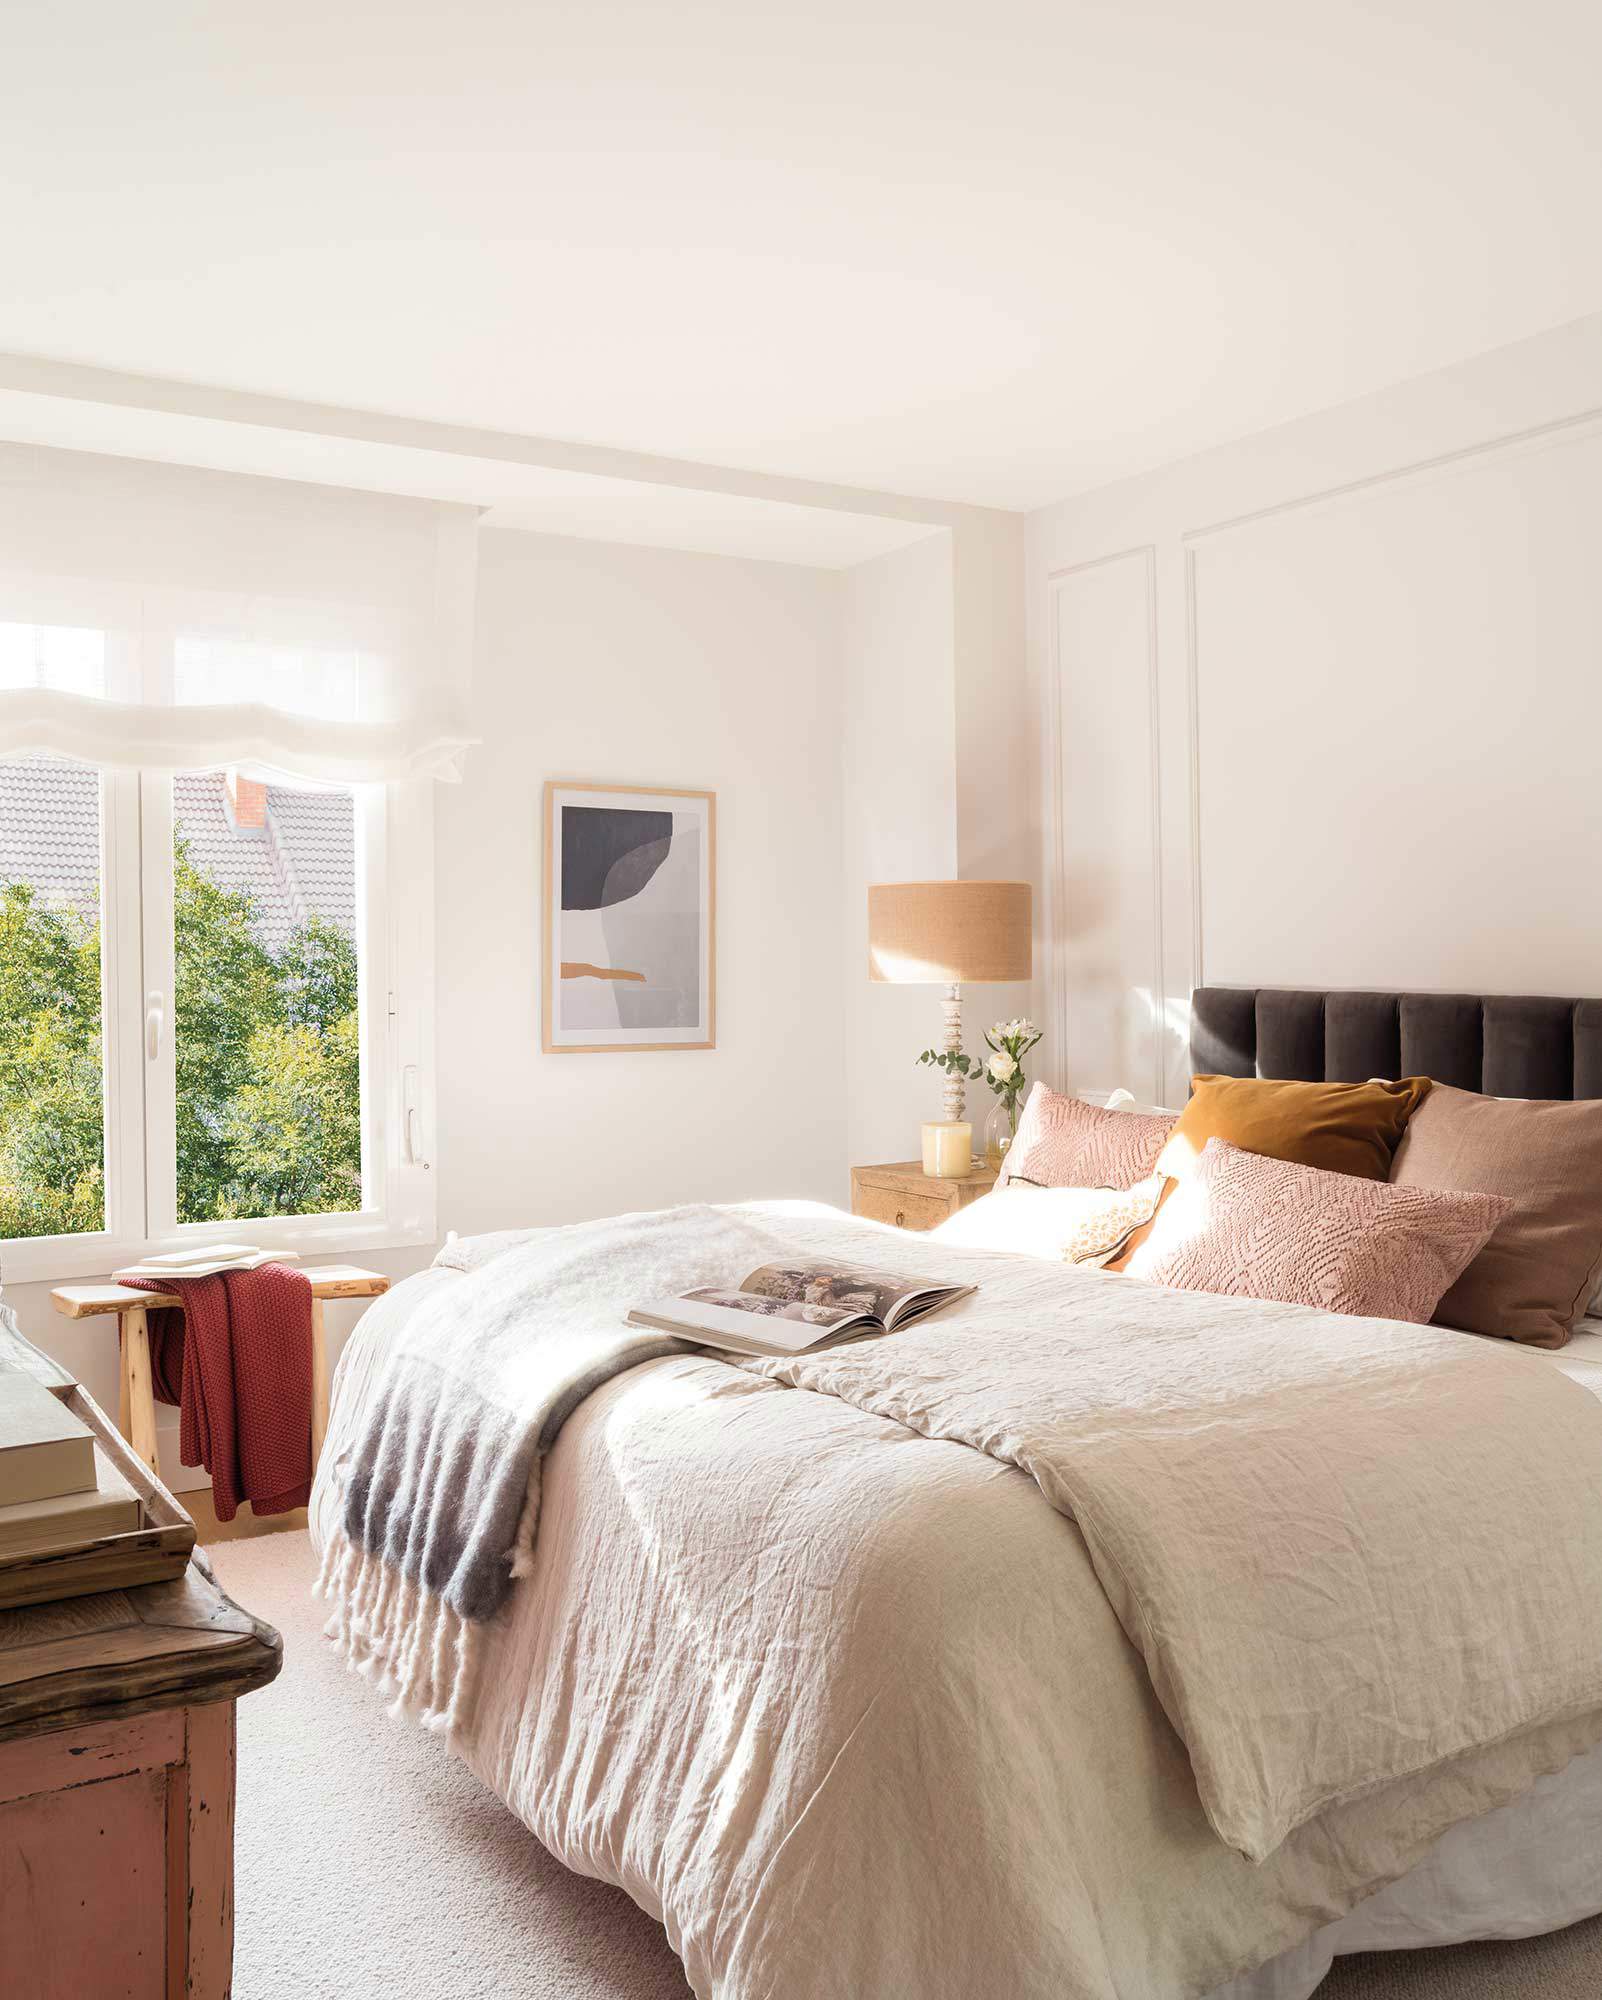  Un dormitorio estiloso con molduras y un cabecero que contrasta 00513110